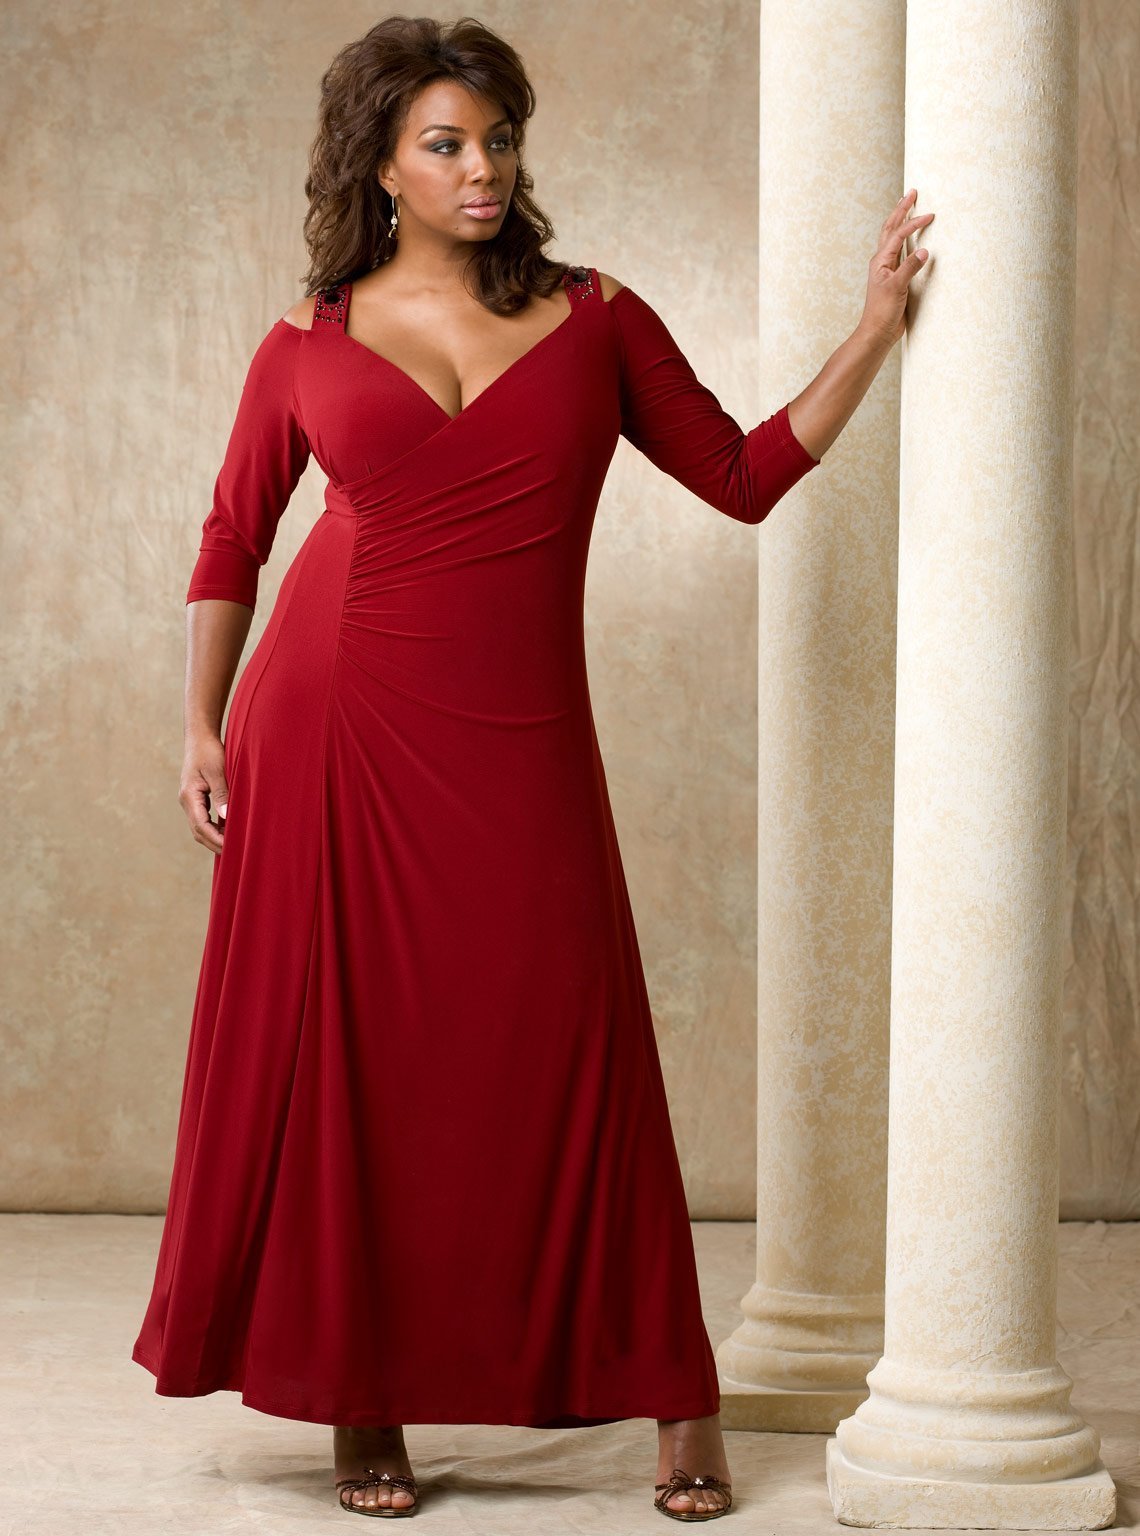 Красивые крупные женщины фото. Красное платье плюс сайз в пол. Вечерние платья для полных. Красивый наряд для полной женщины.